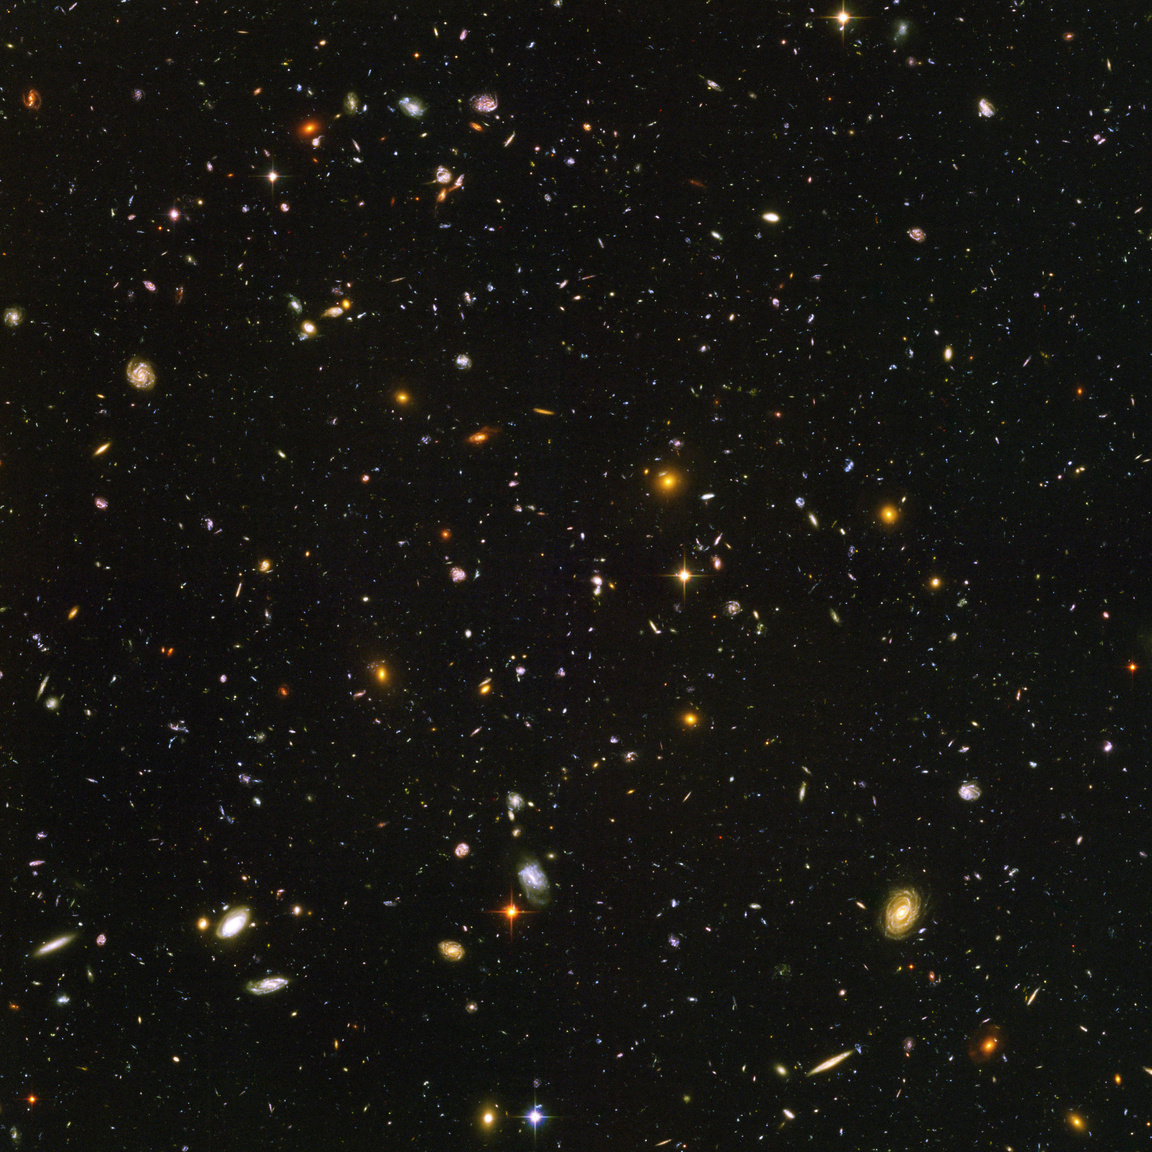 A Hubble talán legfontosabb, legnagyobb hatású felvétele, a Hubble Ultra Deep Field. A kép 2003. szeptember 24 és 2004. január 16. között készült, miközben a Hubble 400-szor kerülte meg a Földet, nyolcszázszor exponálva, összességében több mint 11 napnyi expozíciós idővel. A felvétel különlegessége, hogy a kozmosz egy Földről nézve látszólag üres, kicsiny (egy teleholdnyi) területére irányítva készült a Kemence csillagképben, 11 napig gyűjtögetve az onnan érkező roppant kevés fényt. Az eredmény lenyűgöző: soha korábban nem tapasztalt mélységű és részletességű betekintést nyújt az univerzumunk múltjába. Amit a képen látunk, az szinte kivétel nélkül távoli galaxis (csupán egy maroknyi csillag látható rajta a mi galaxisunkból), a kompozit fotó eredetijén (mert ez itt egy kicsinyített  verzió ugyebár) csaknem tízezer galaxis számoltak össze a kutatók. A galaxisok némelyike (nagyjából száz kicsiny vöröses pont) több milliárd fényévre van tőlünk, és az univerzum fiatalkori, 800 millió évvel keletkezése utáni állapotáról mesélnek, míg a közelebbi, nagyobb és fényesebb, határozott galaxisformájú csillagvárosok már egy jóval öregebb, 13 milliárd éves univerzumról adnak képet. Az egész felvétel olyan, mintha egy szívószálon át kukucskálnánk a kozmosz legmélyére.